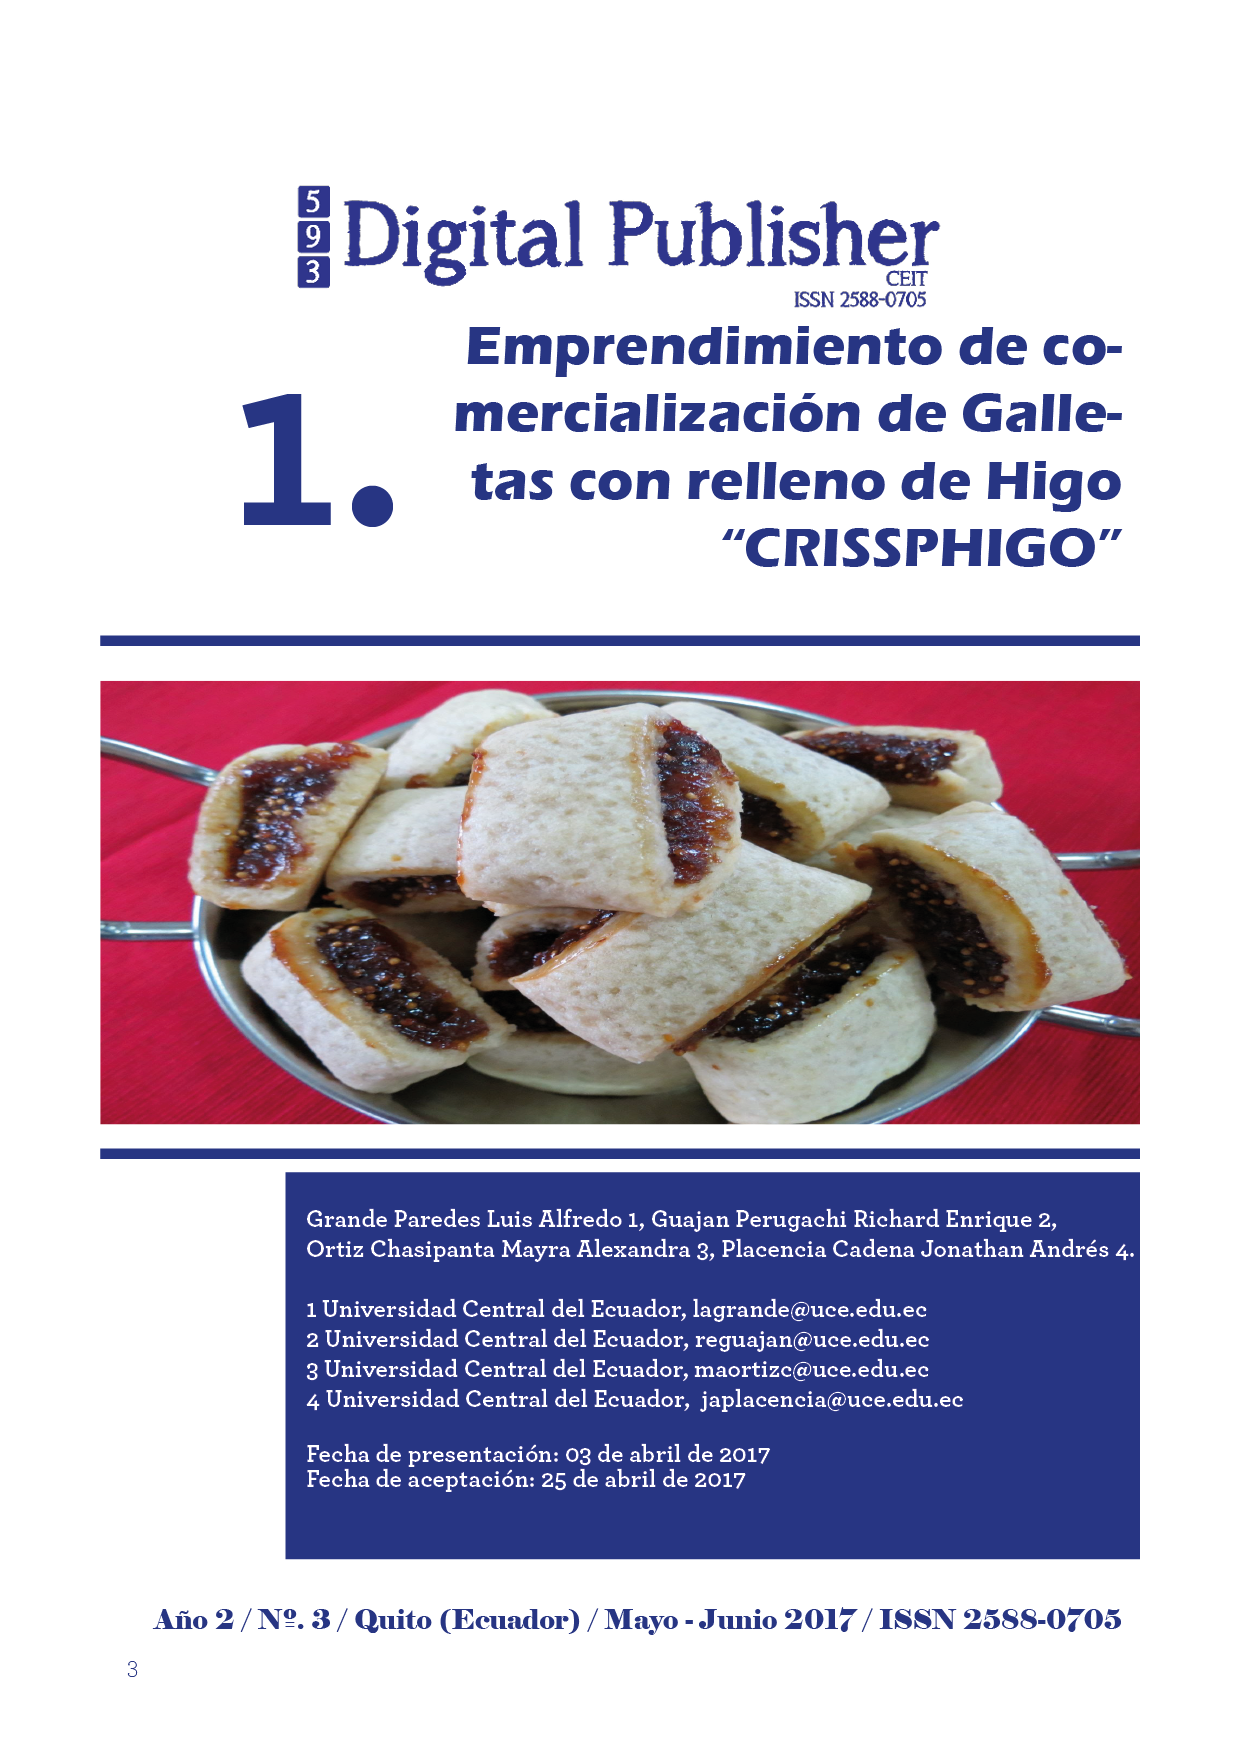 Emprendimiento de comercialización de Galletas con relleno de Higo  “CRISSPHIGO” | 593 Digital Publisher CEIT